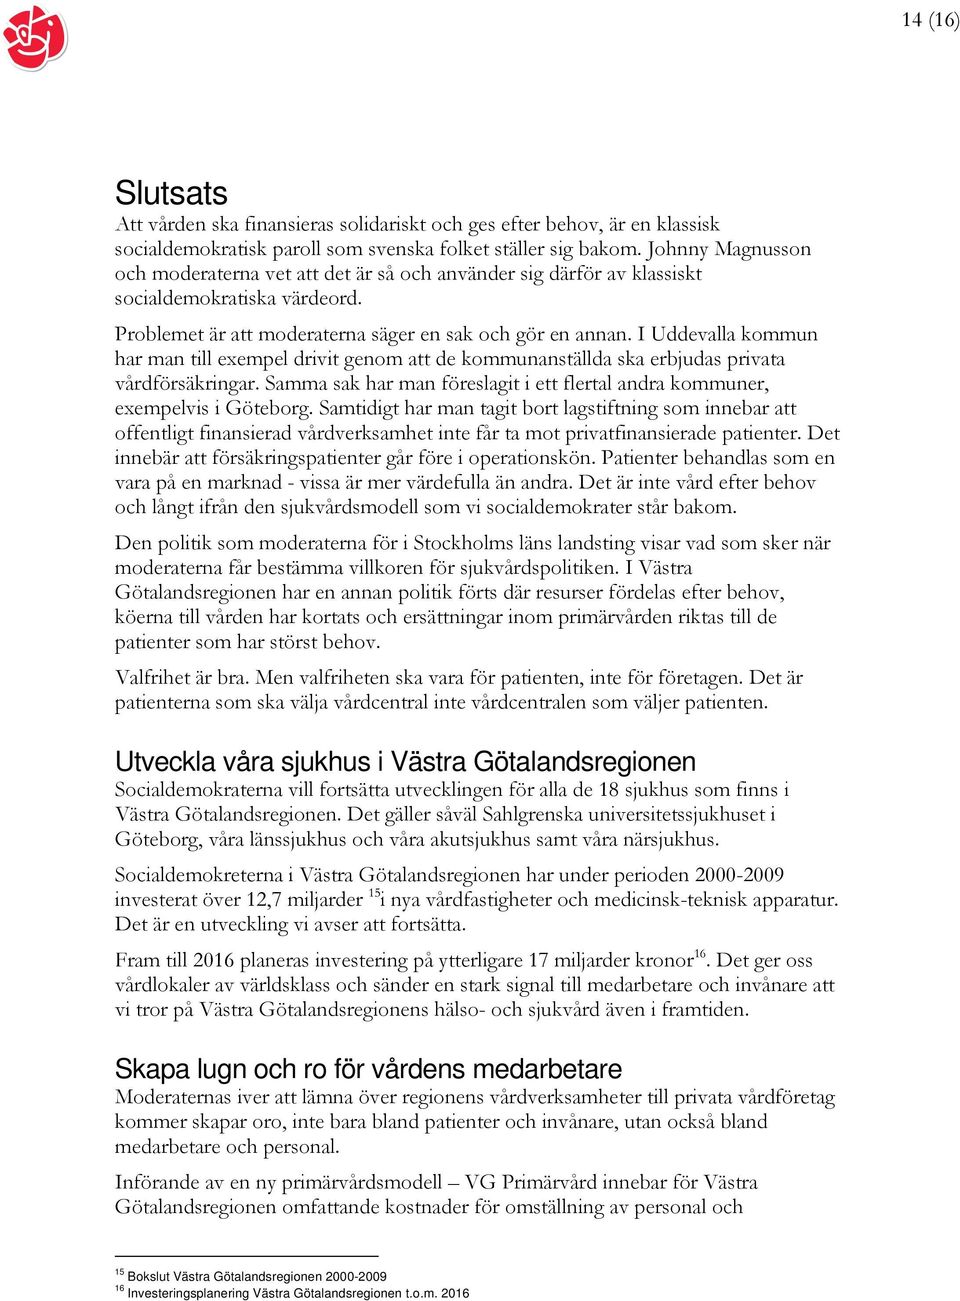 I Uddevalla kommun har man till exempel drivit genom att de kommunanställda ska erbjudas privata vårdförsäkringar. Samma sak har man föreslagit i ett flertal andra kommuner, exempelvis i Göteborg.